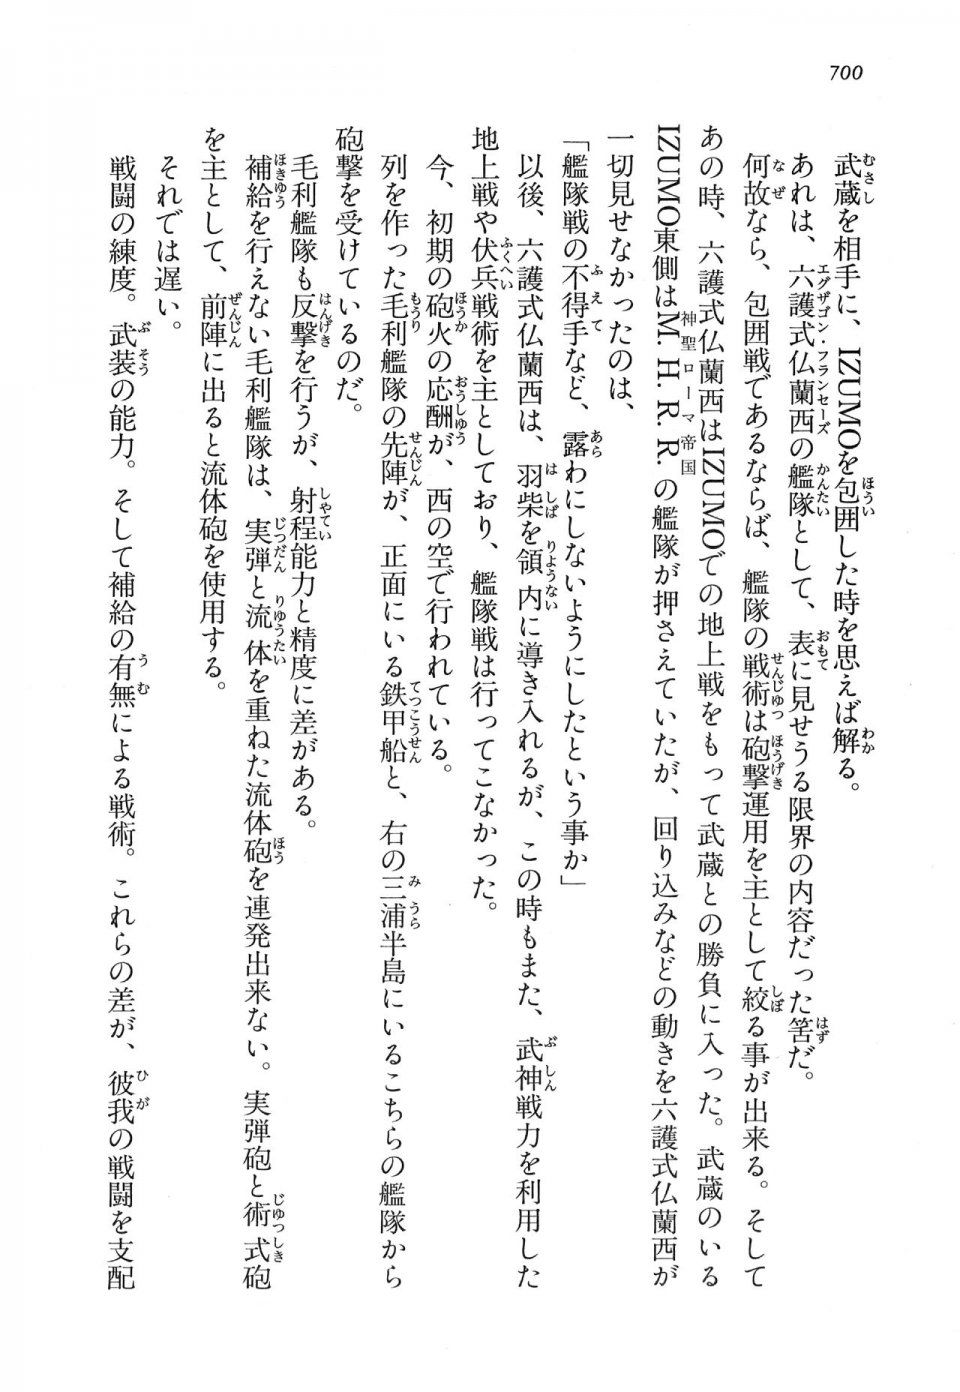 Kyoukai Senjou no Horizon LN Vol 16(7A) - Photo #700